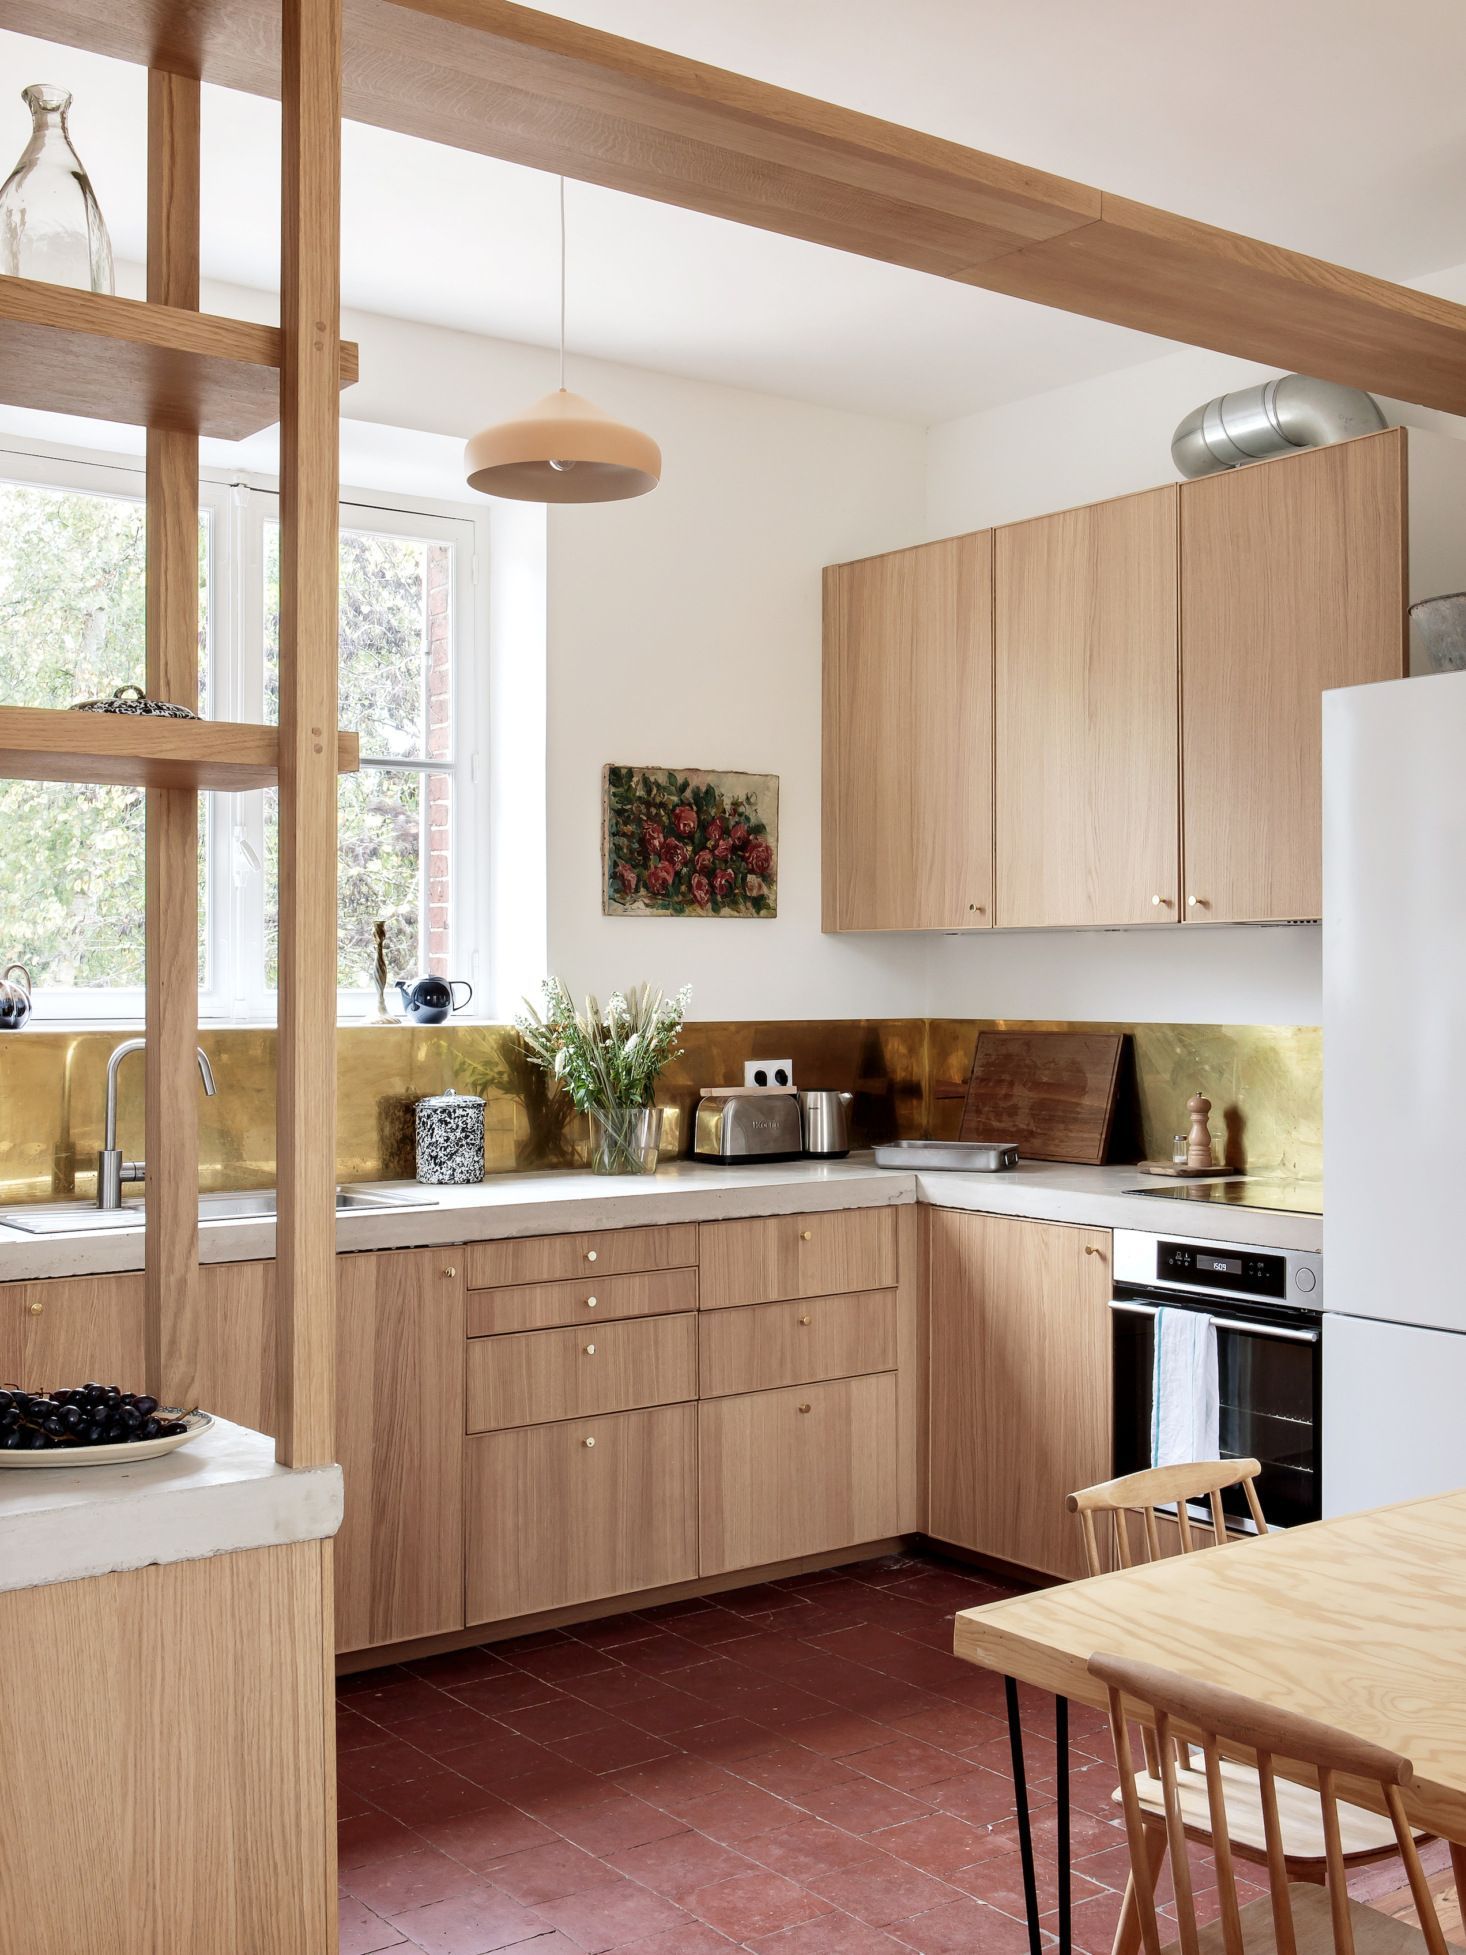 Ikea Kitchen Ideas The Most Beautiful, Kitchen Nook Ikea Cabinets